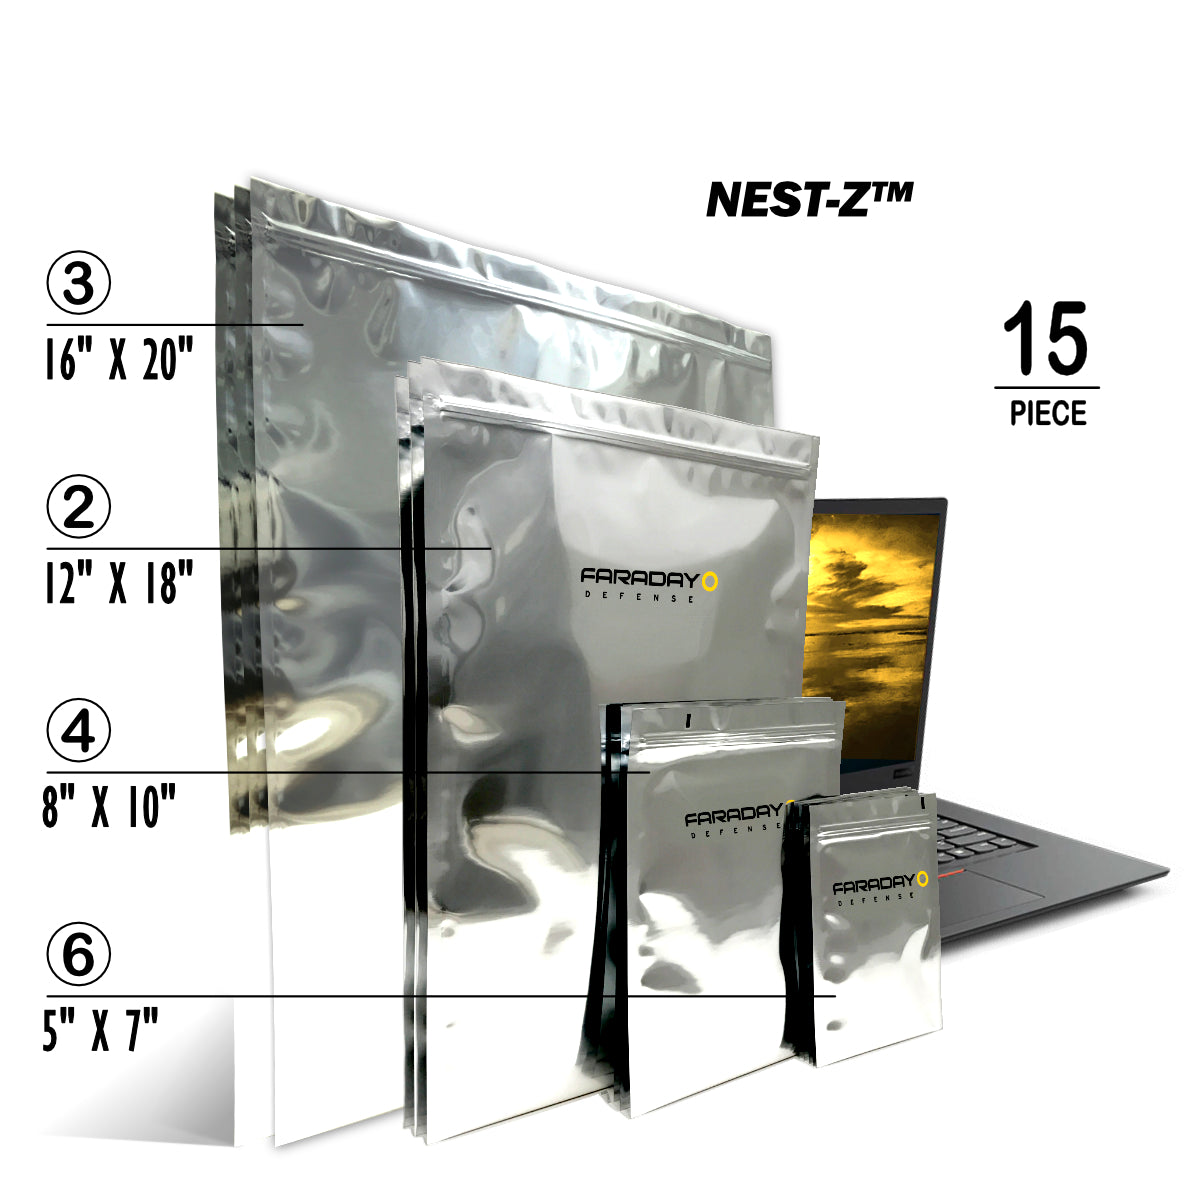 Faraday NEST-Z EMP 7.0 Mil Faraday Bag (5x7)